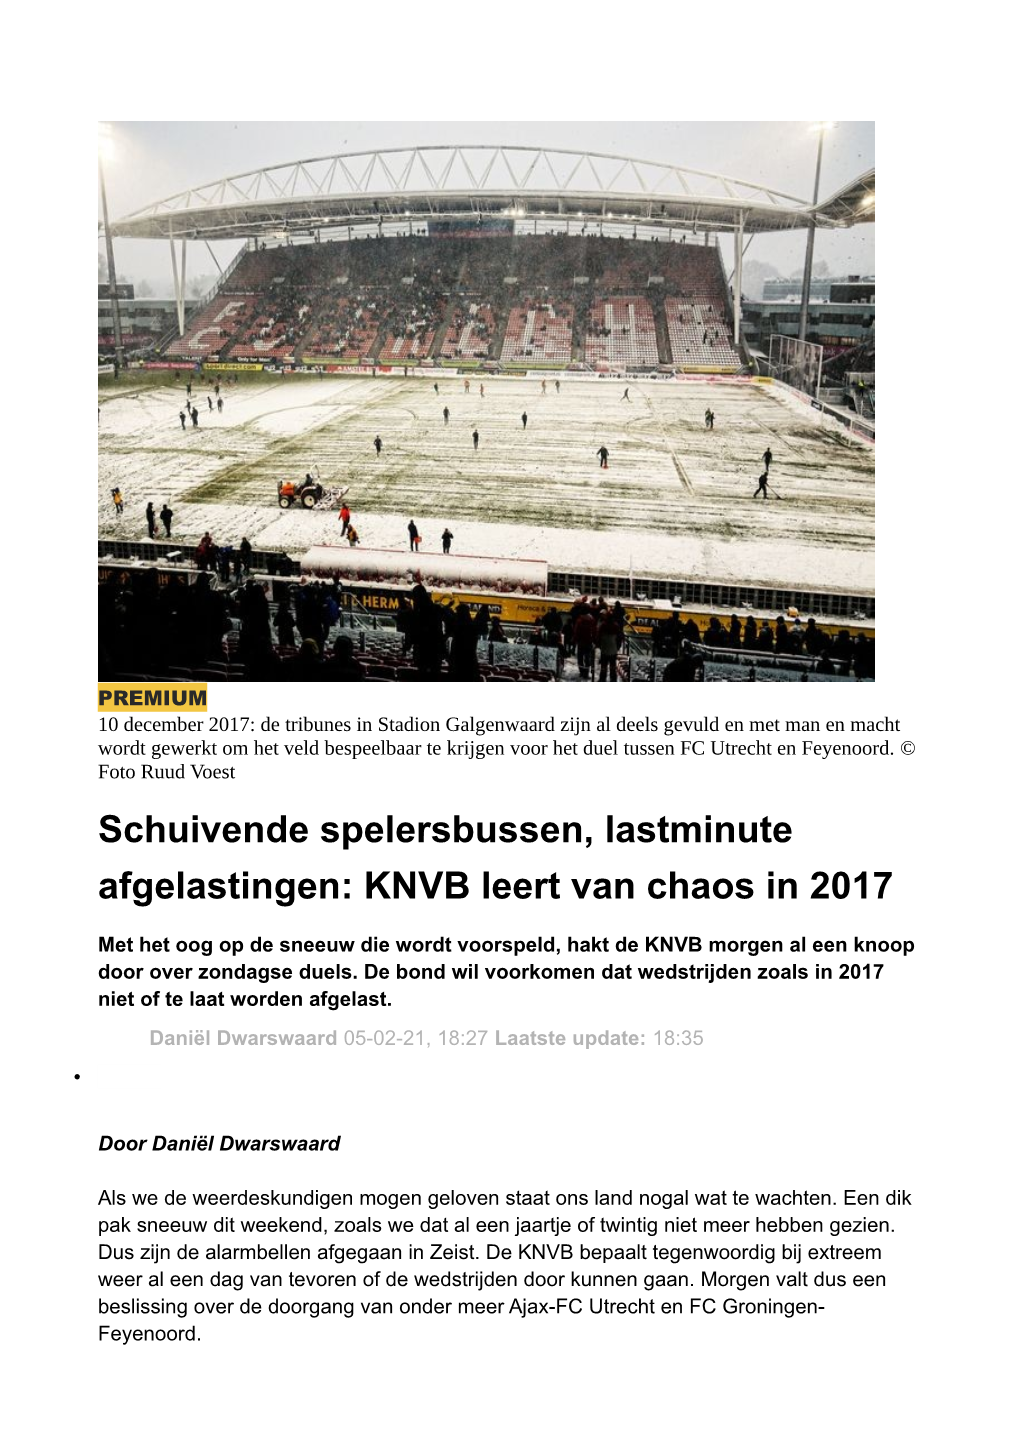 Schuivende Spelersbussen, Lastminute Afgelastingen: KNVB Leert Van Chaos in 2017